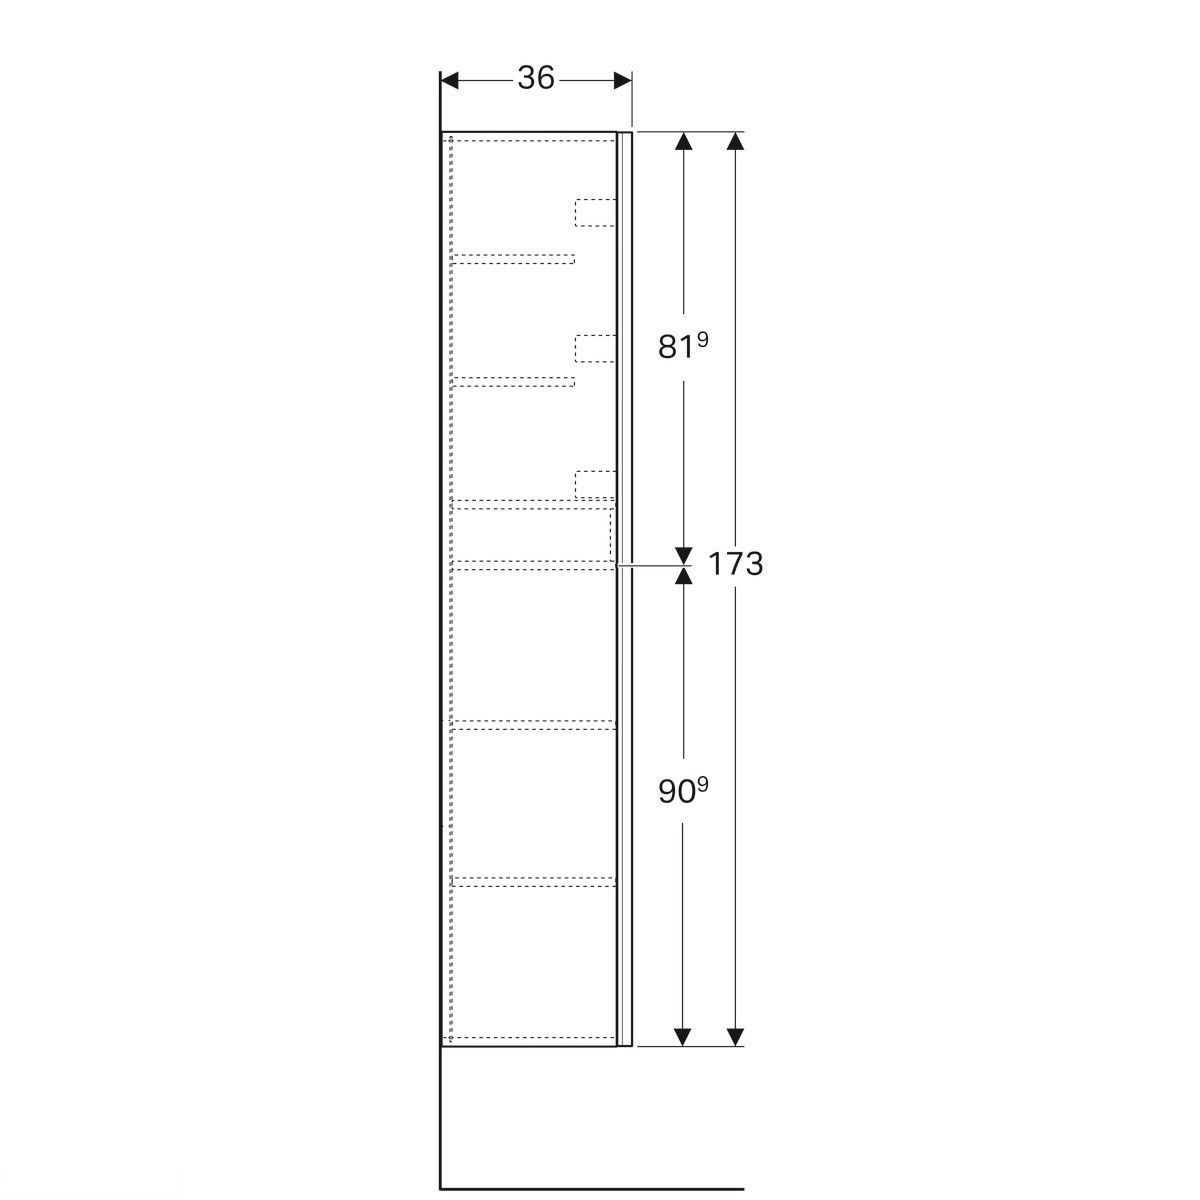 Висока шафа з двома дверима, Geberit Acanto корпус: лакований ультраглянцевий/ білий, фасад: біле скло 500.619.01.2